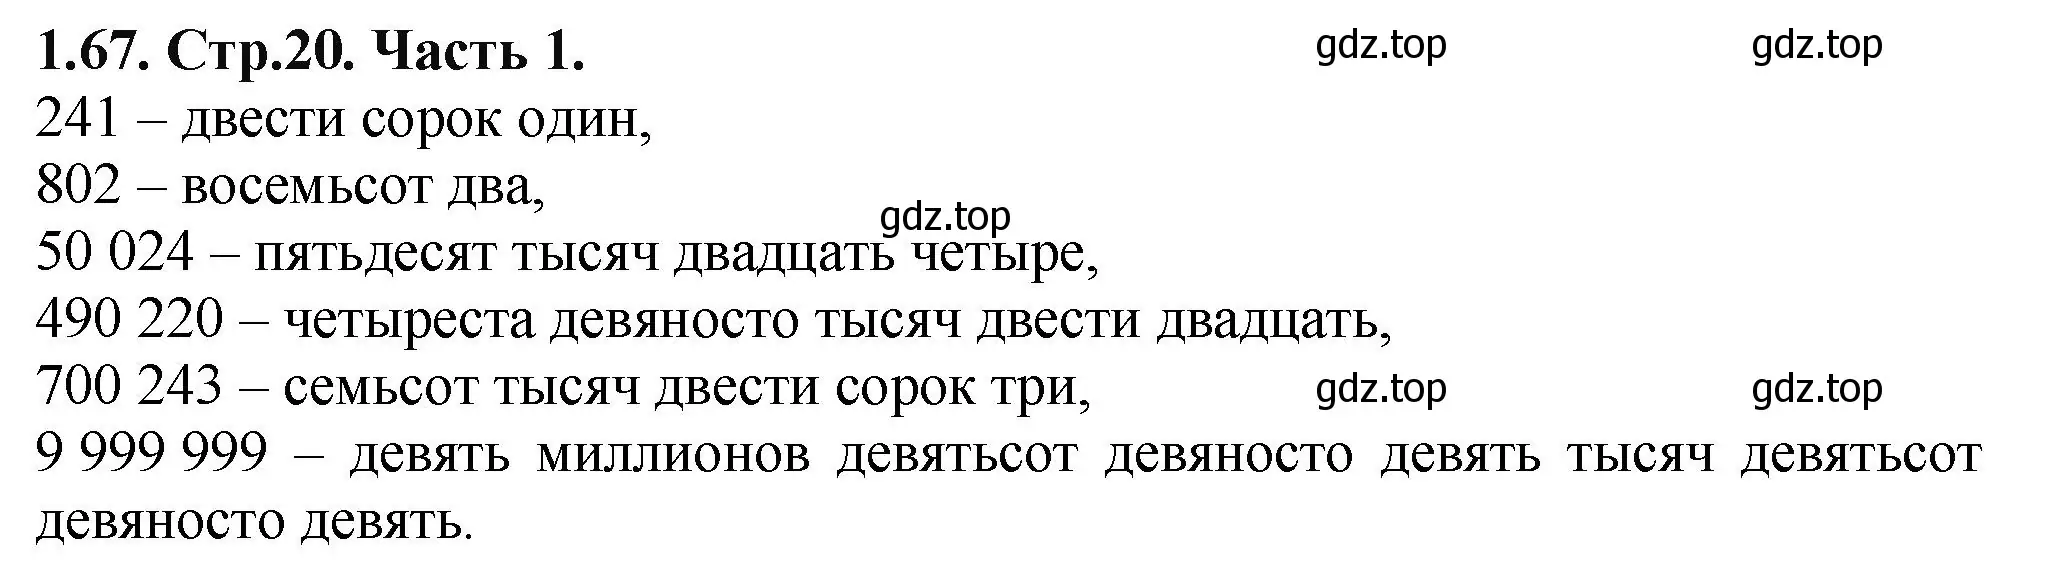 Решение номер 1.67 (страница 20) гдз по математике 5 класс Виленкин, Жохов, учебник 1 часть